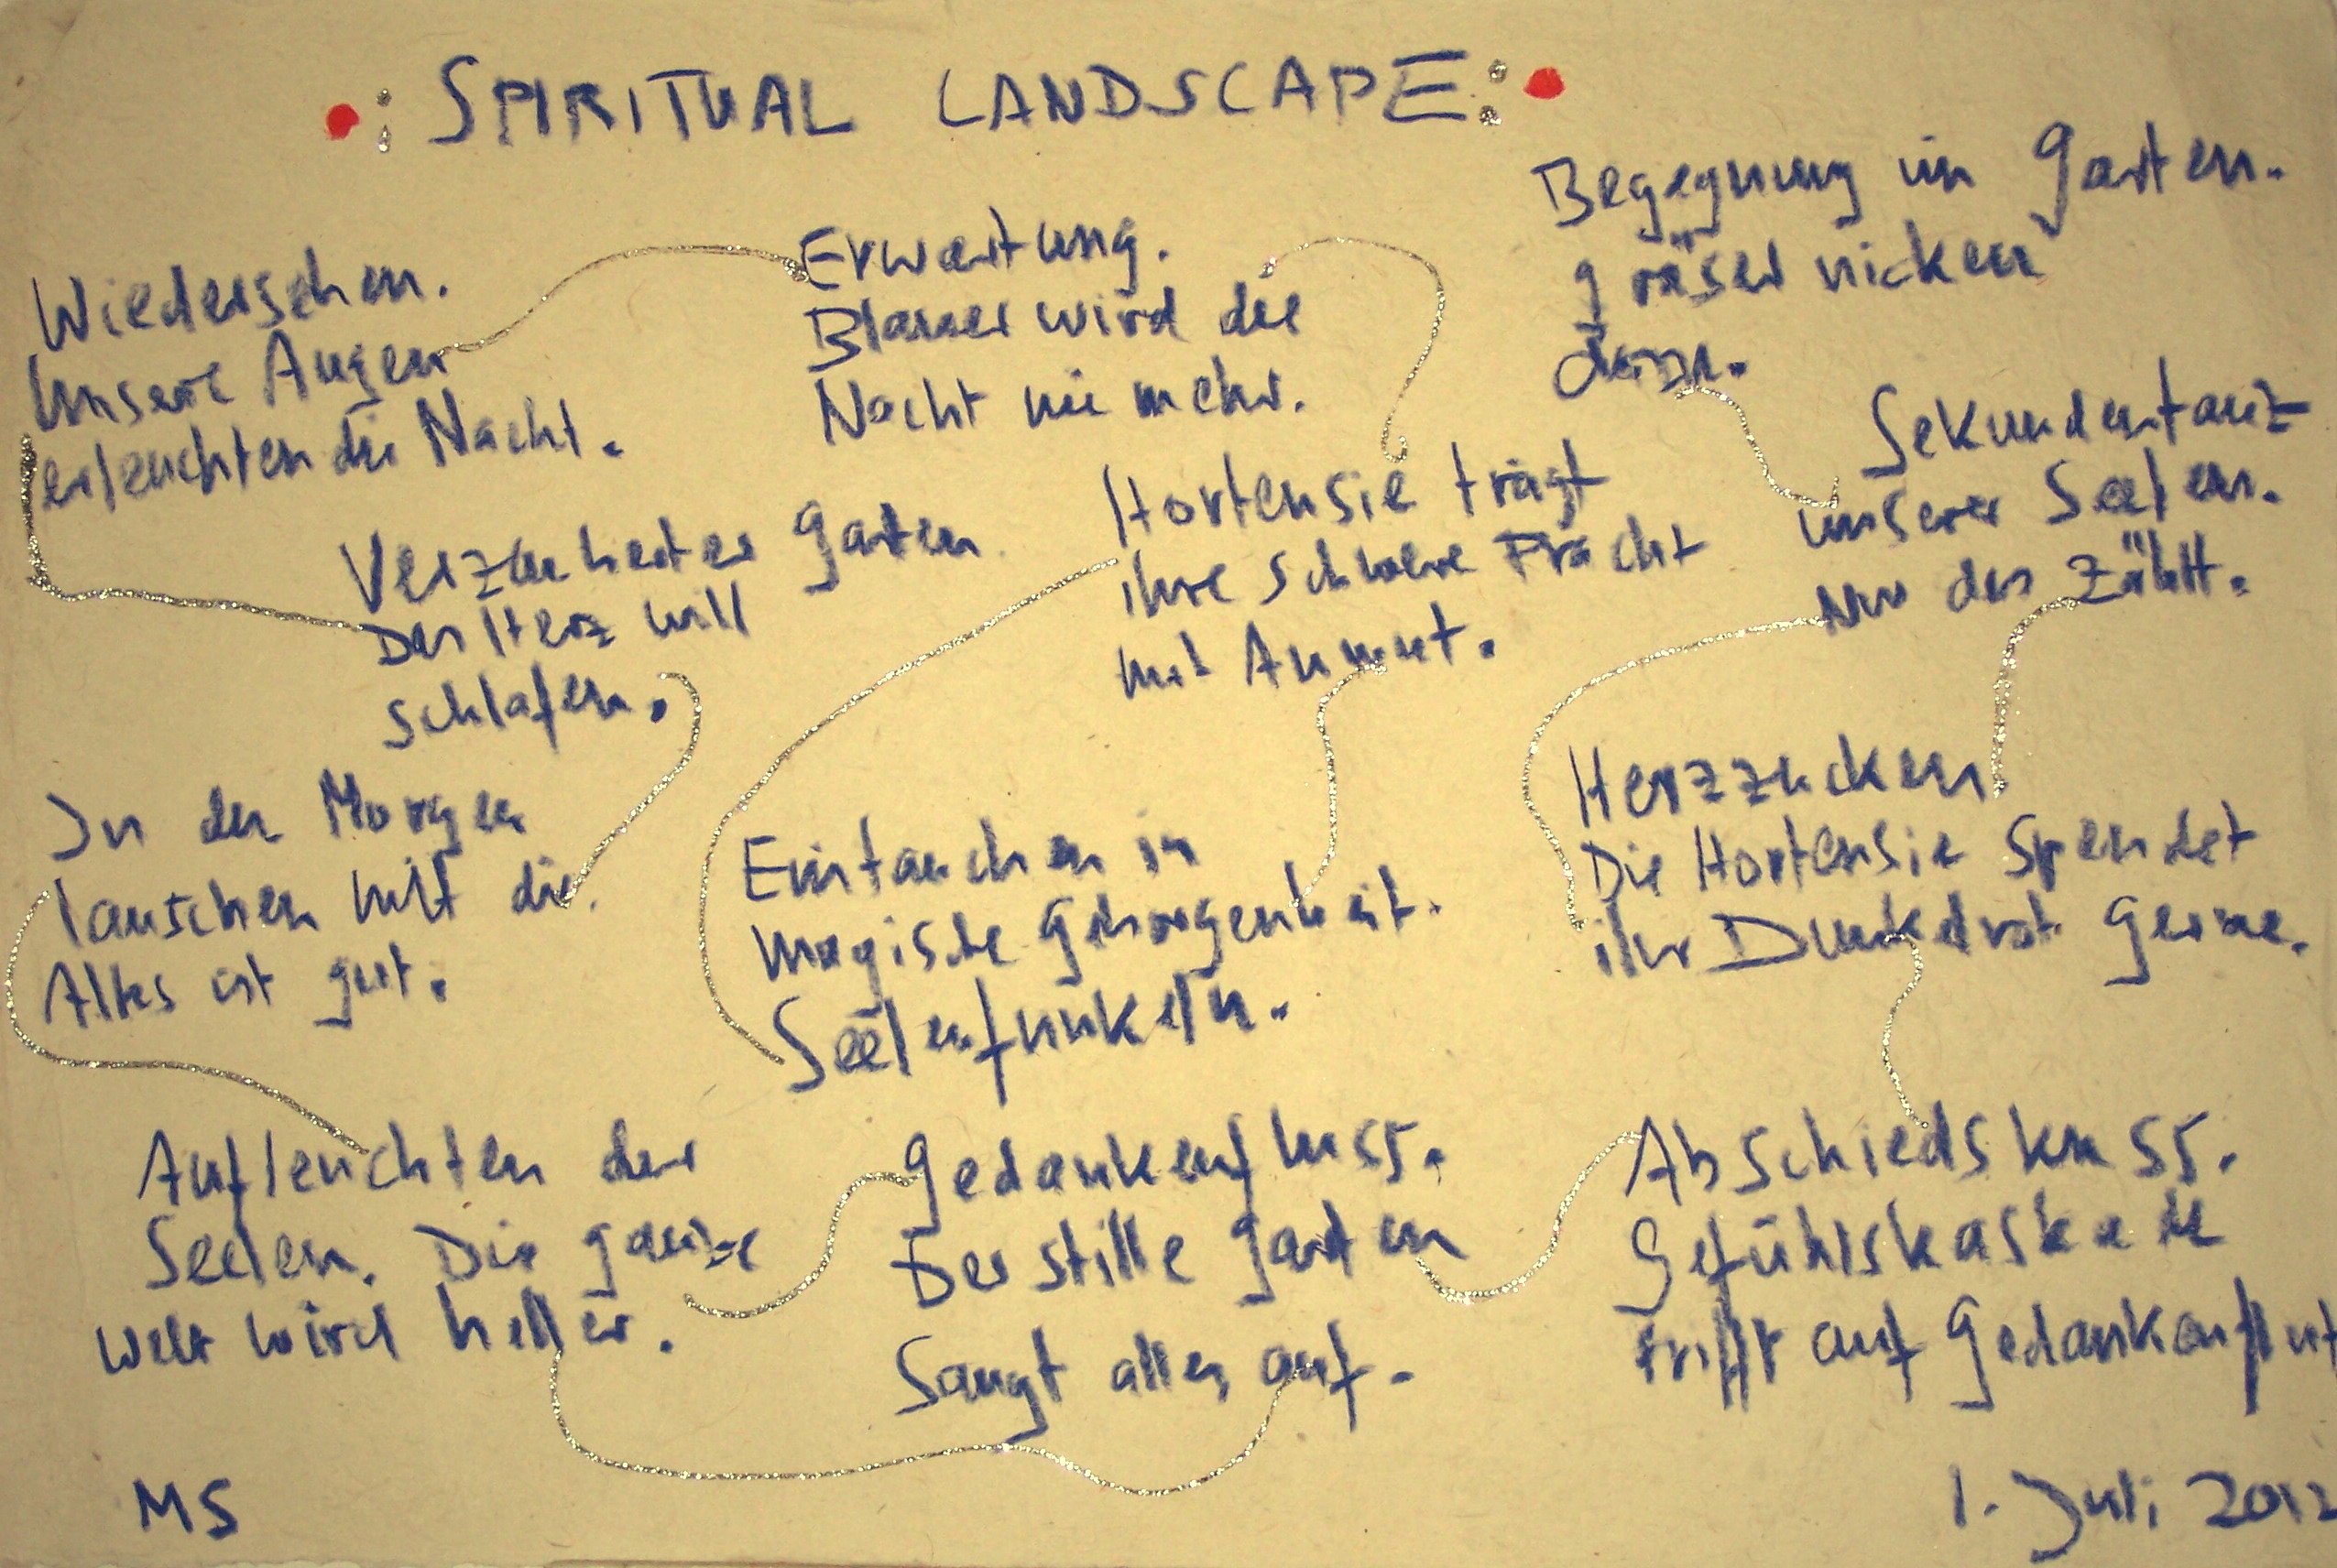 20120701_Spiritual Landscape_Gedichtlandschaft